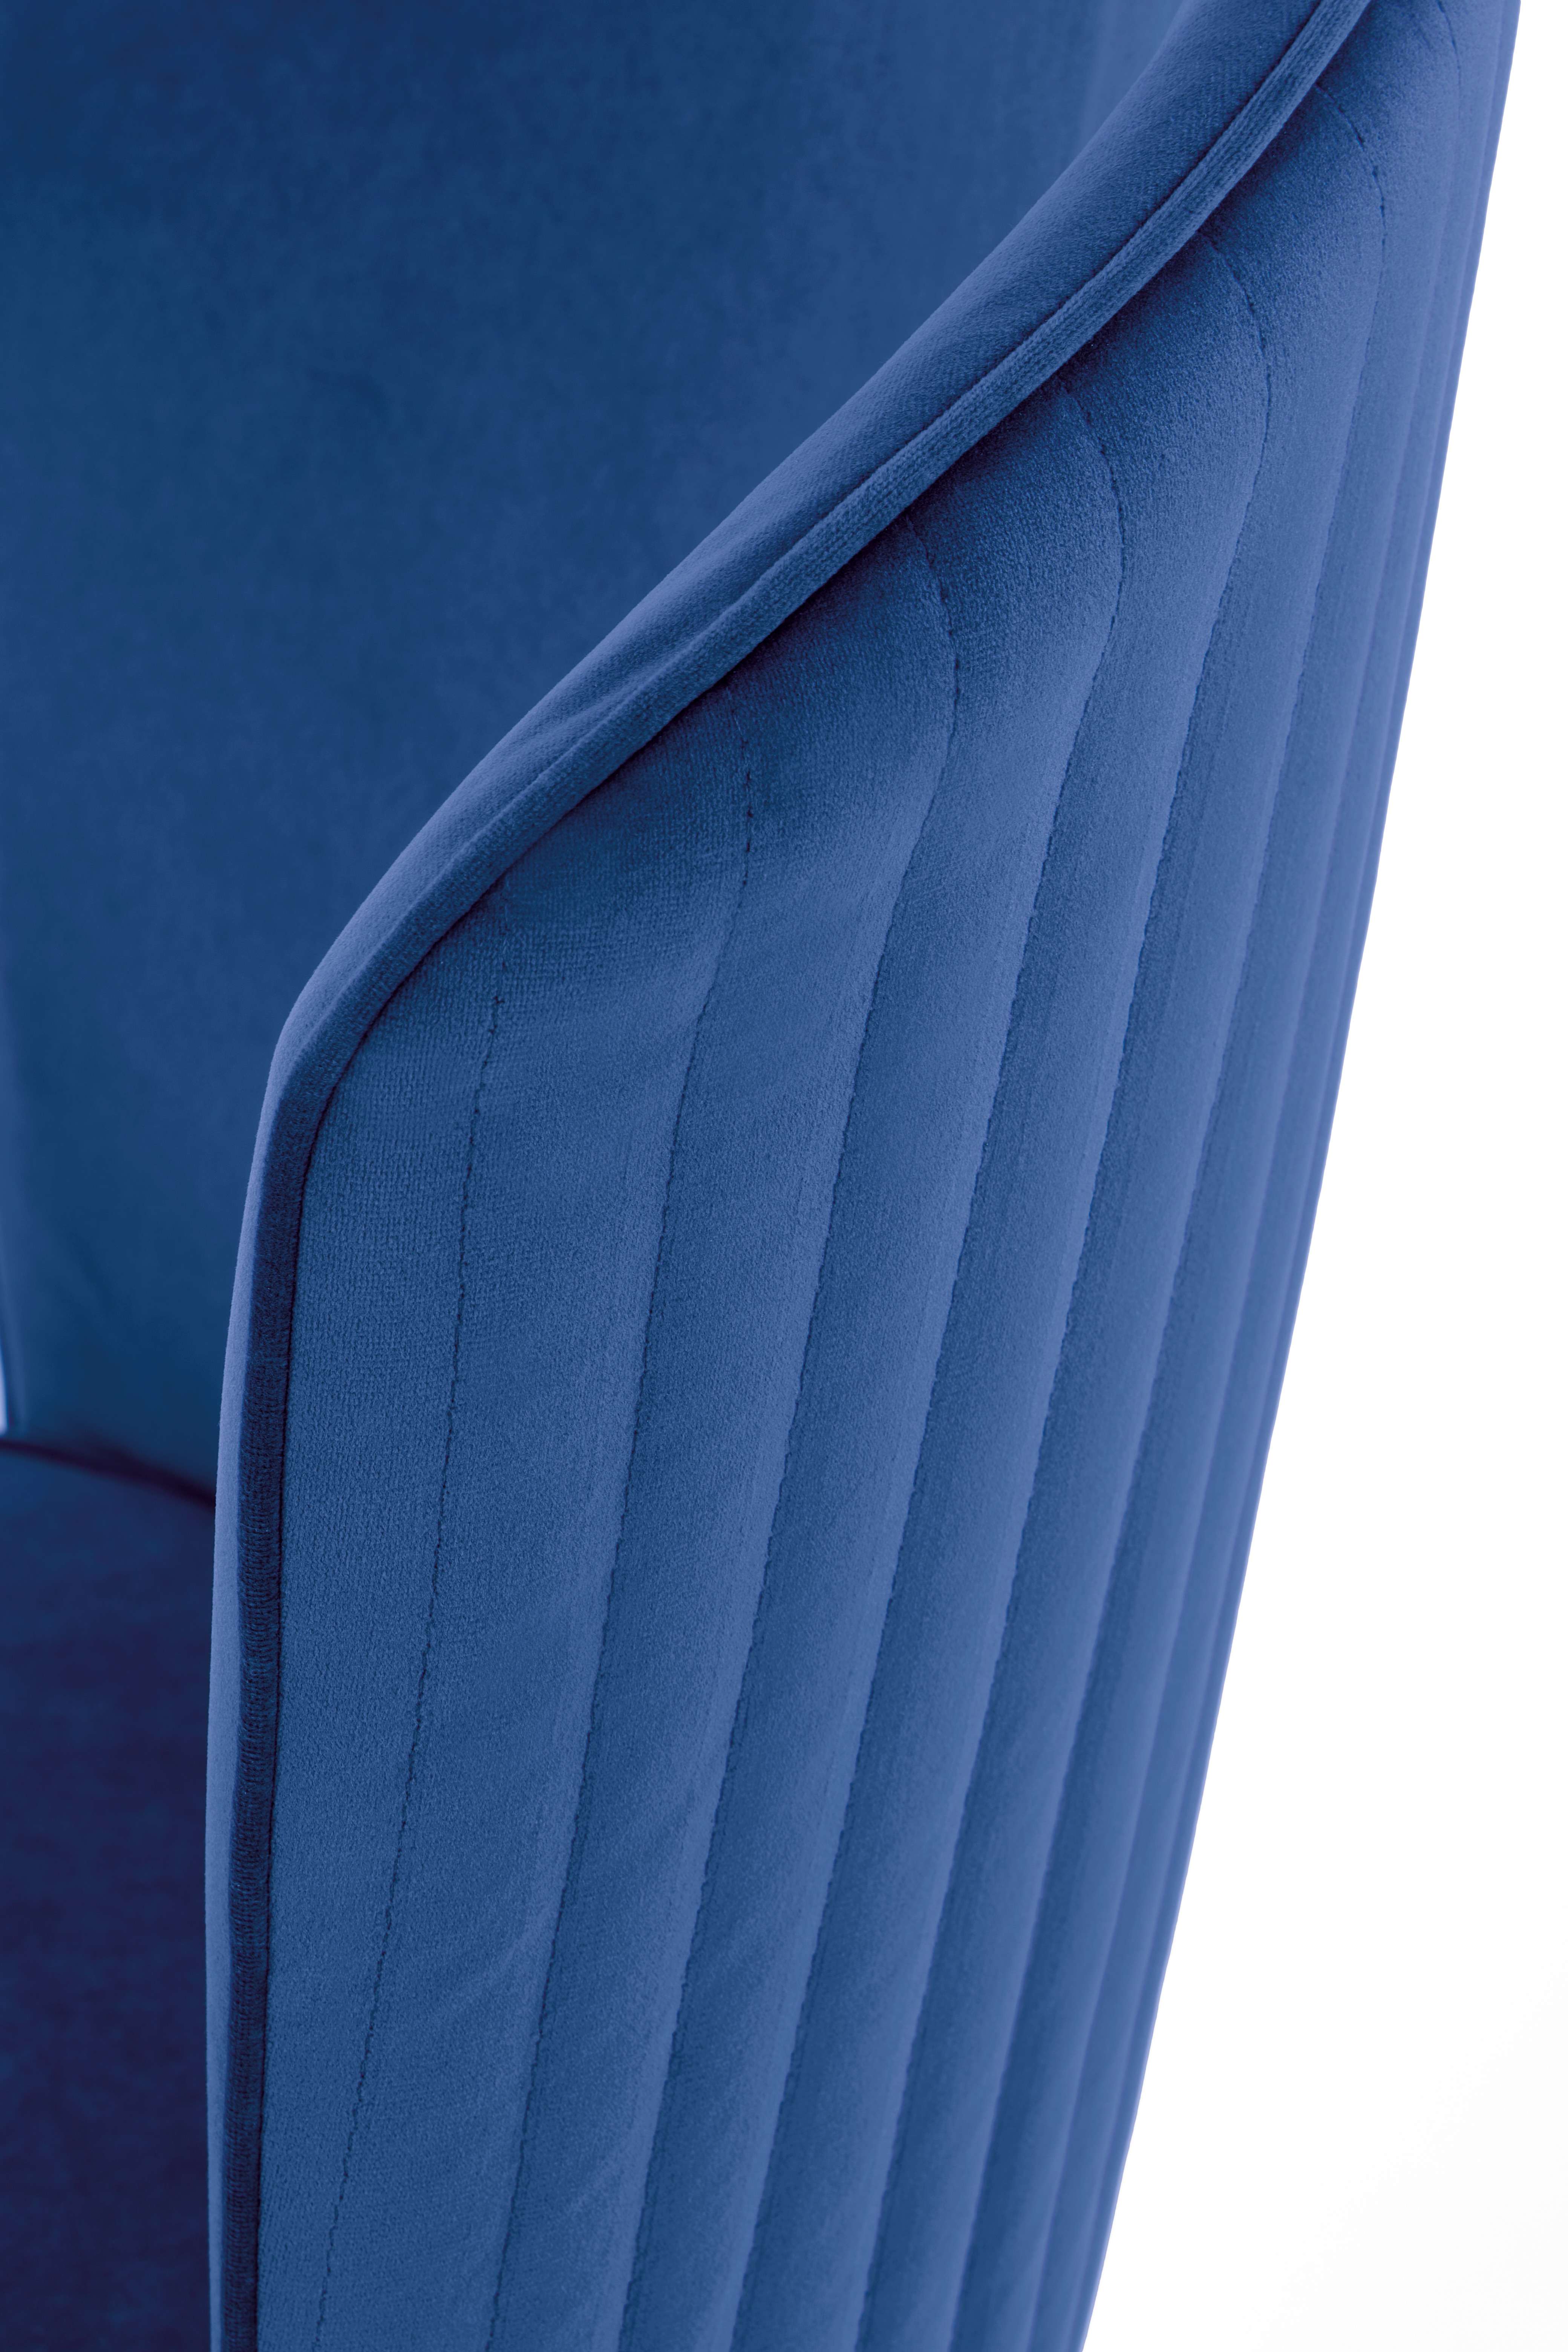 Scaun tapițat K446 - albastru k446 Židle granátový